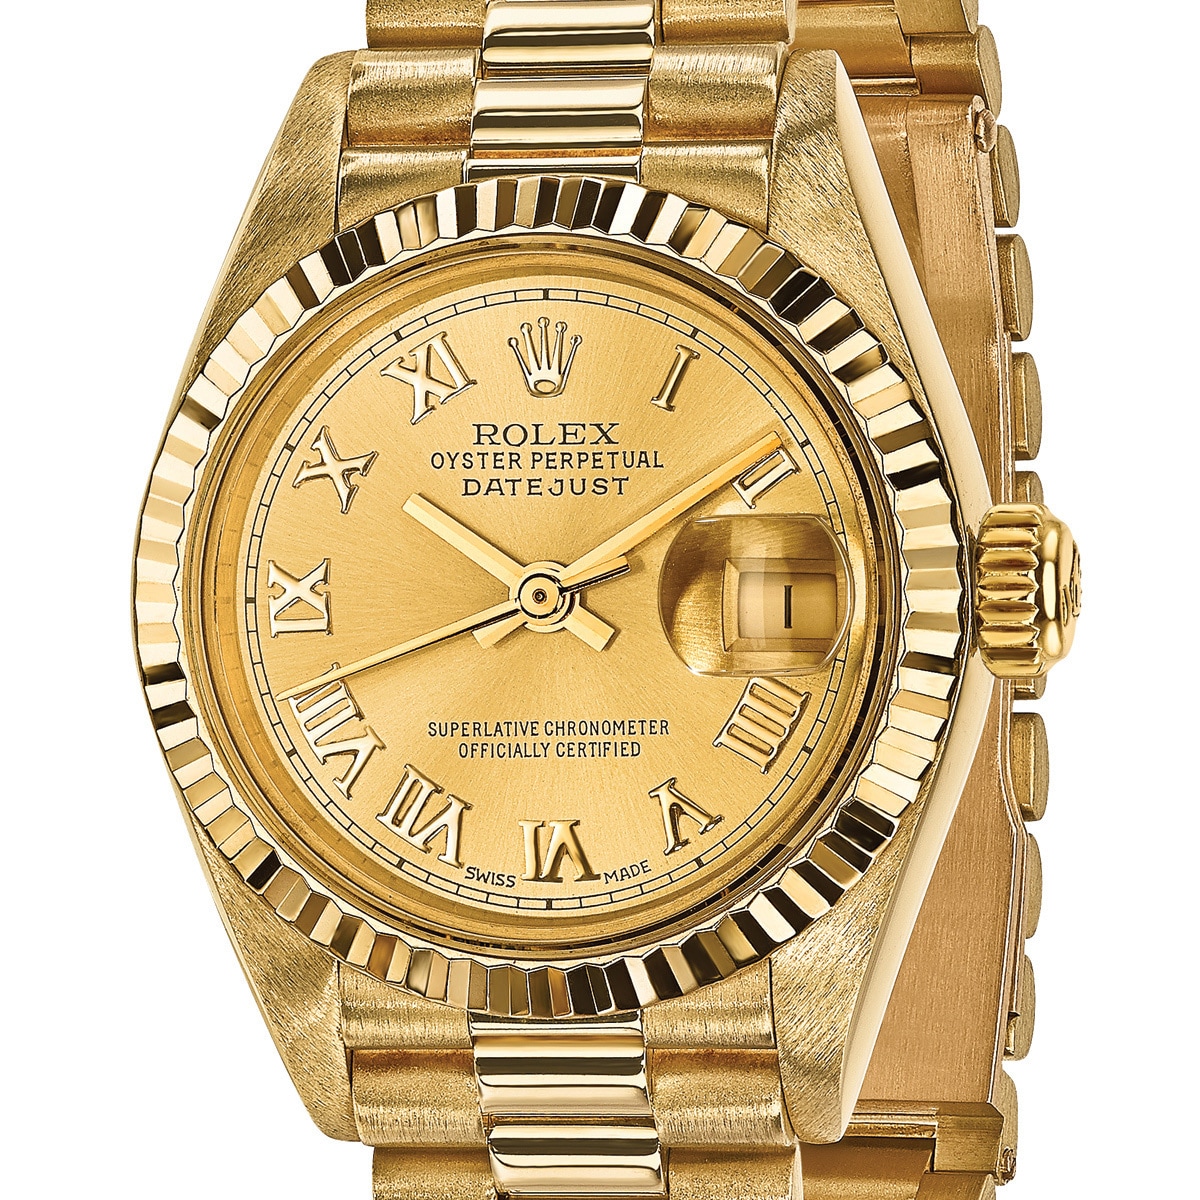 18 karat gold rolex watch price